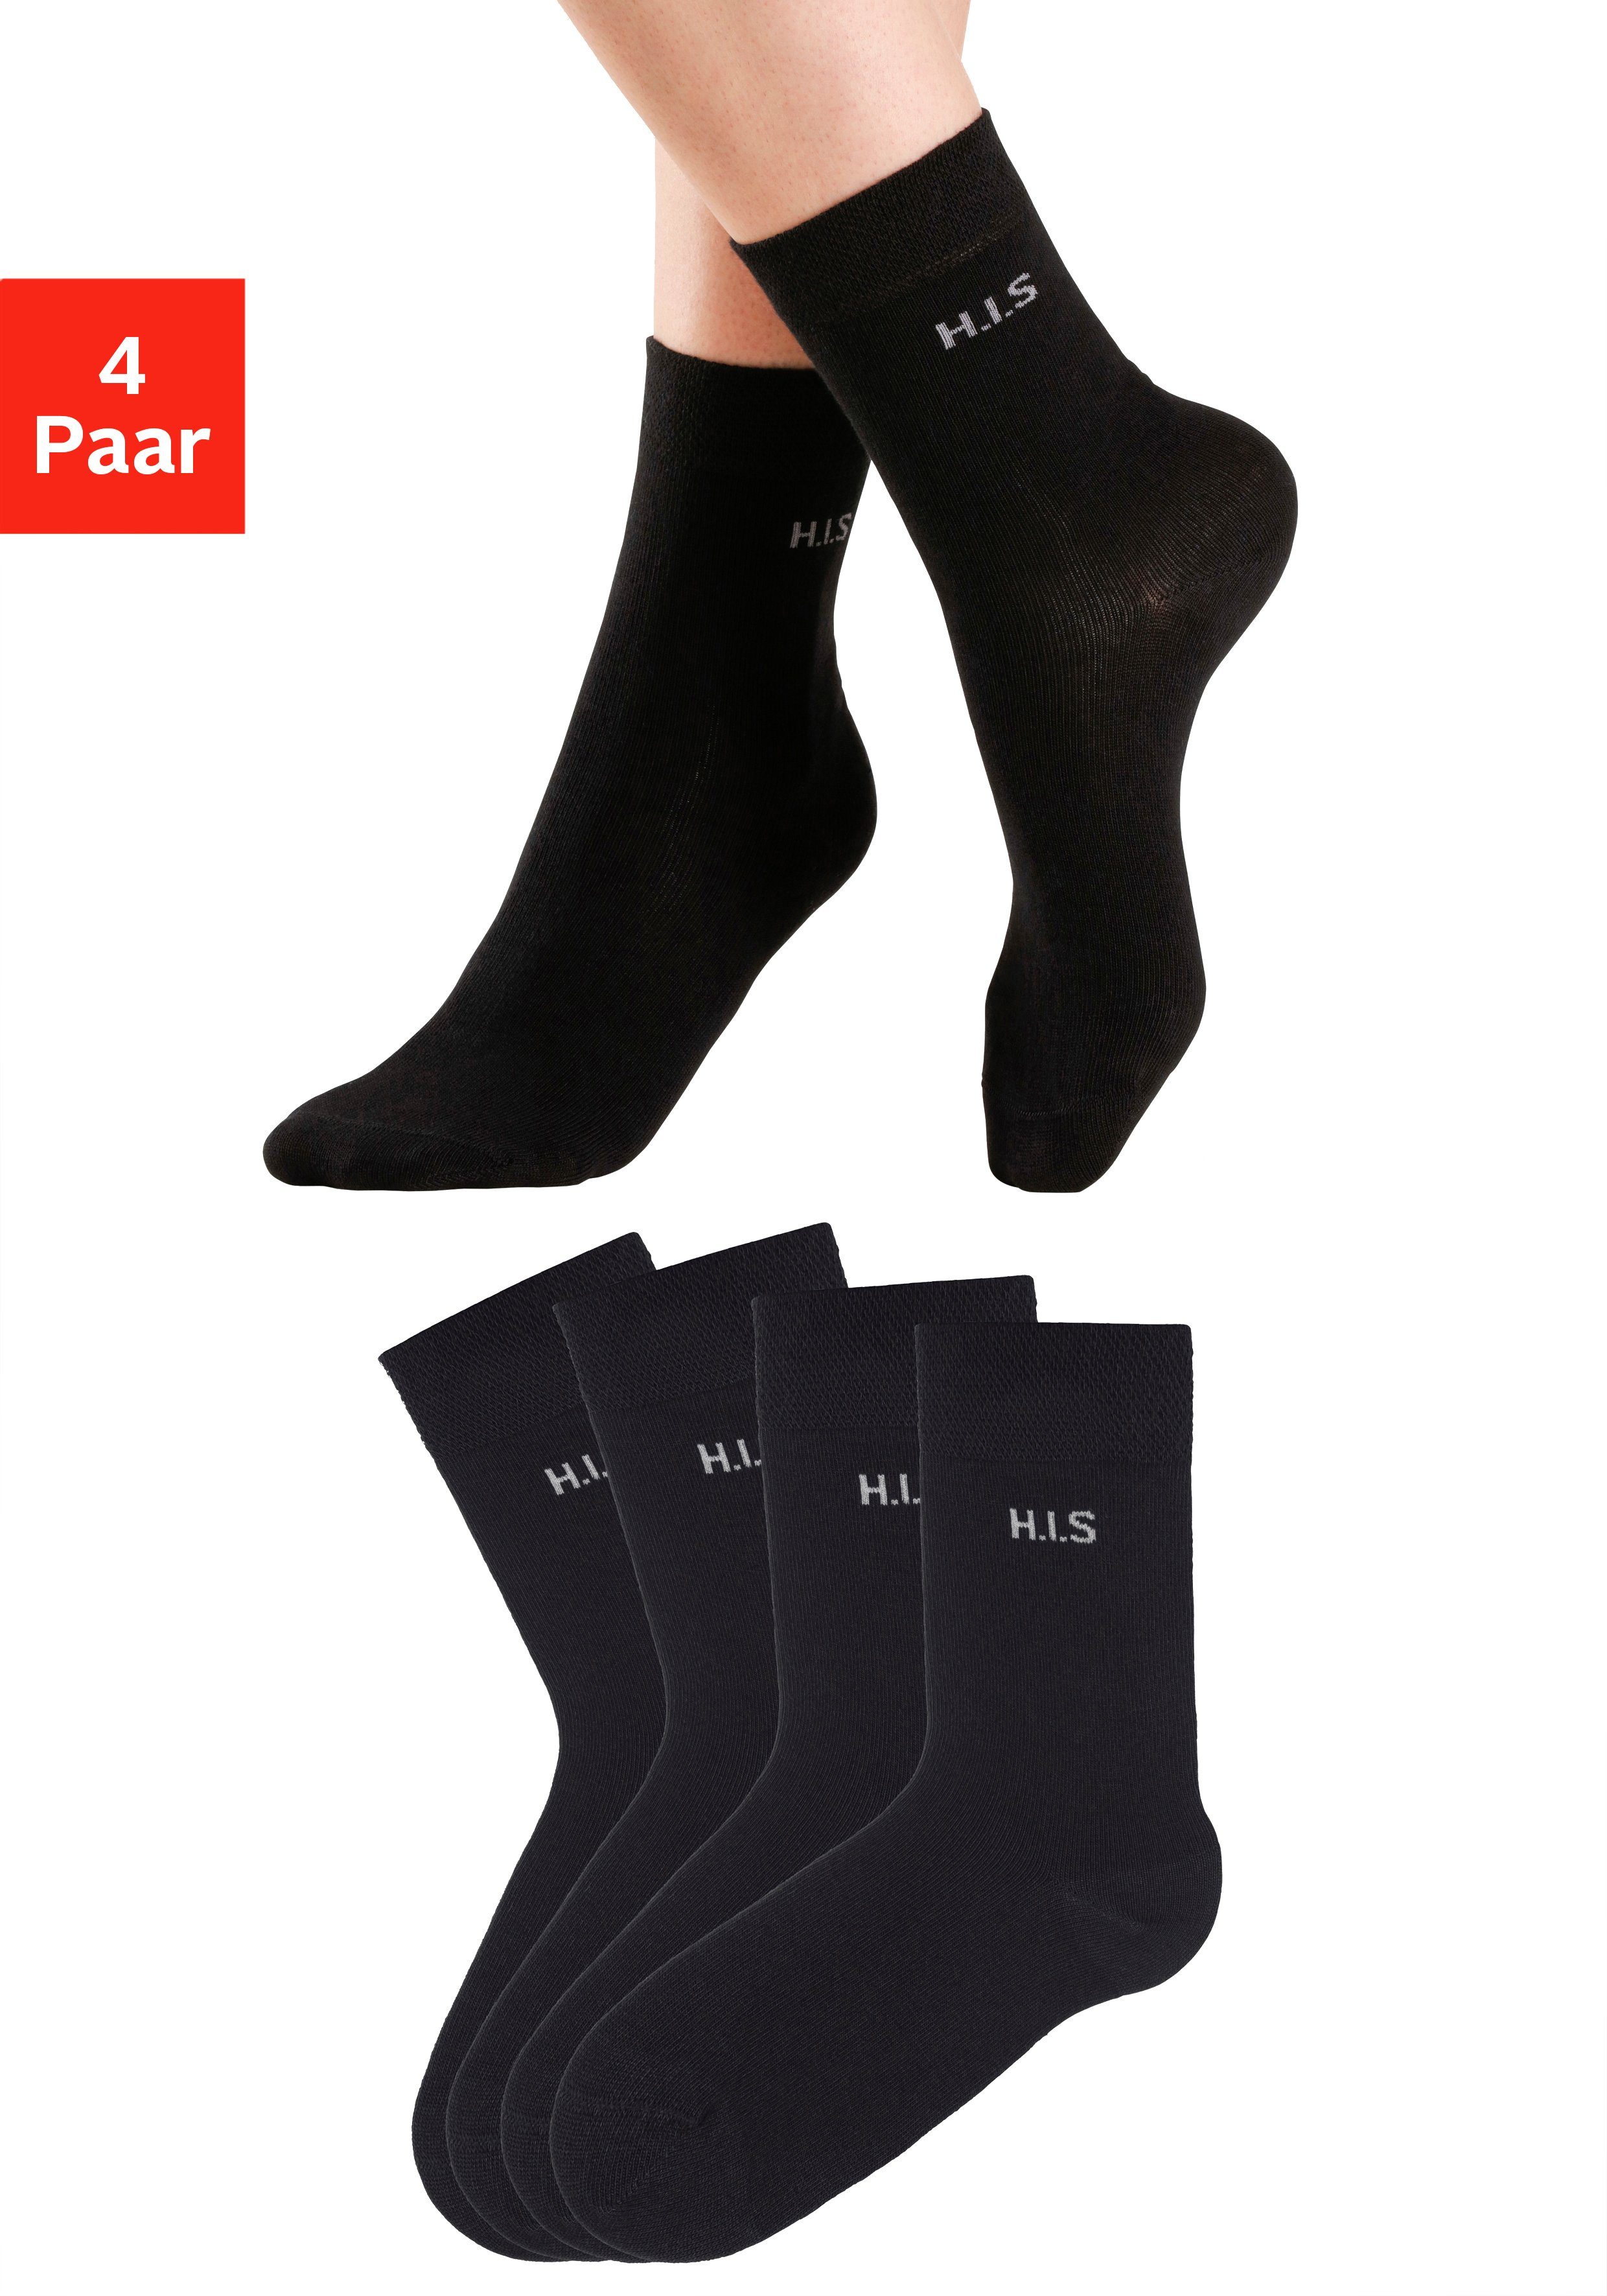 h.i.s sokken zonder snijdende boord (set, 4 paar) zwart